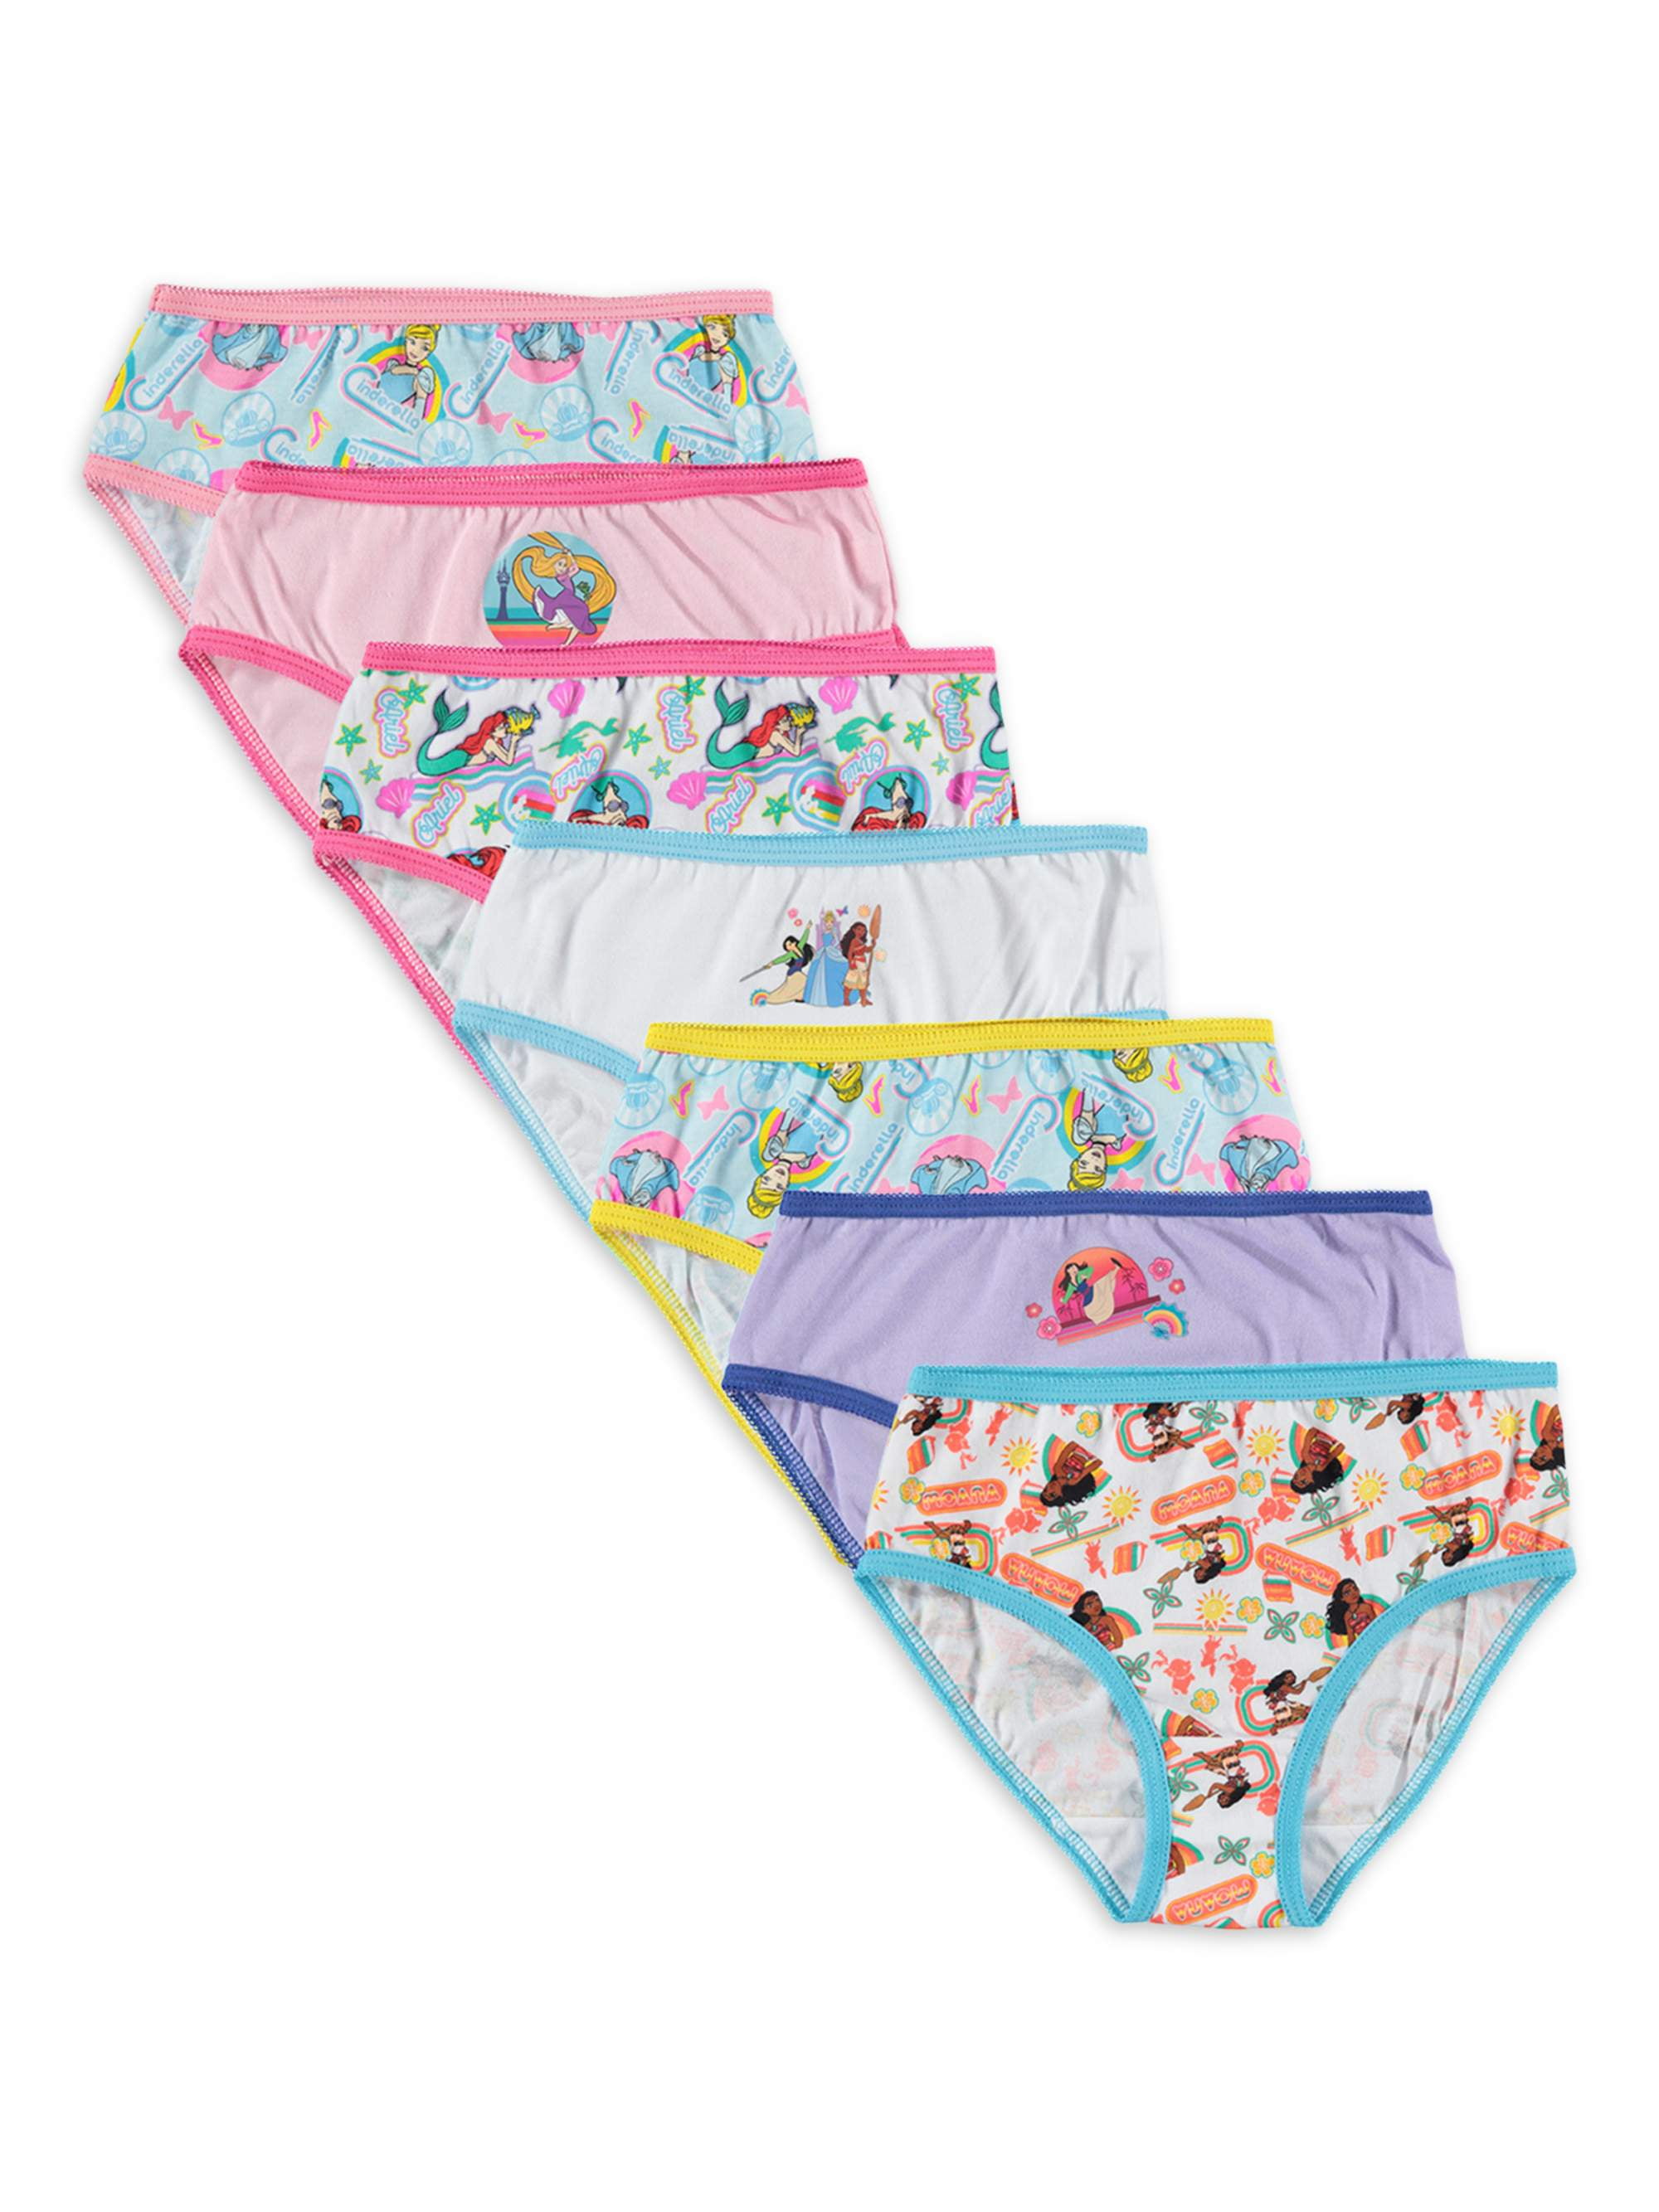 Disney Girls 7-Pack Vampirina Underwear Panty Underwear